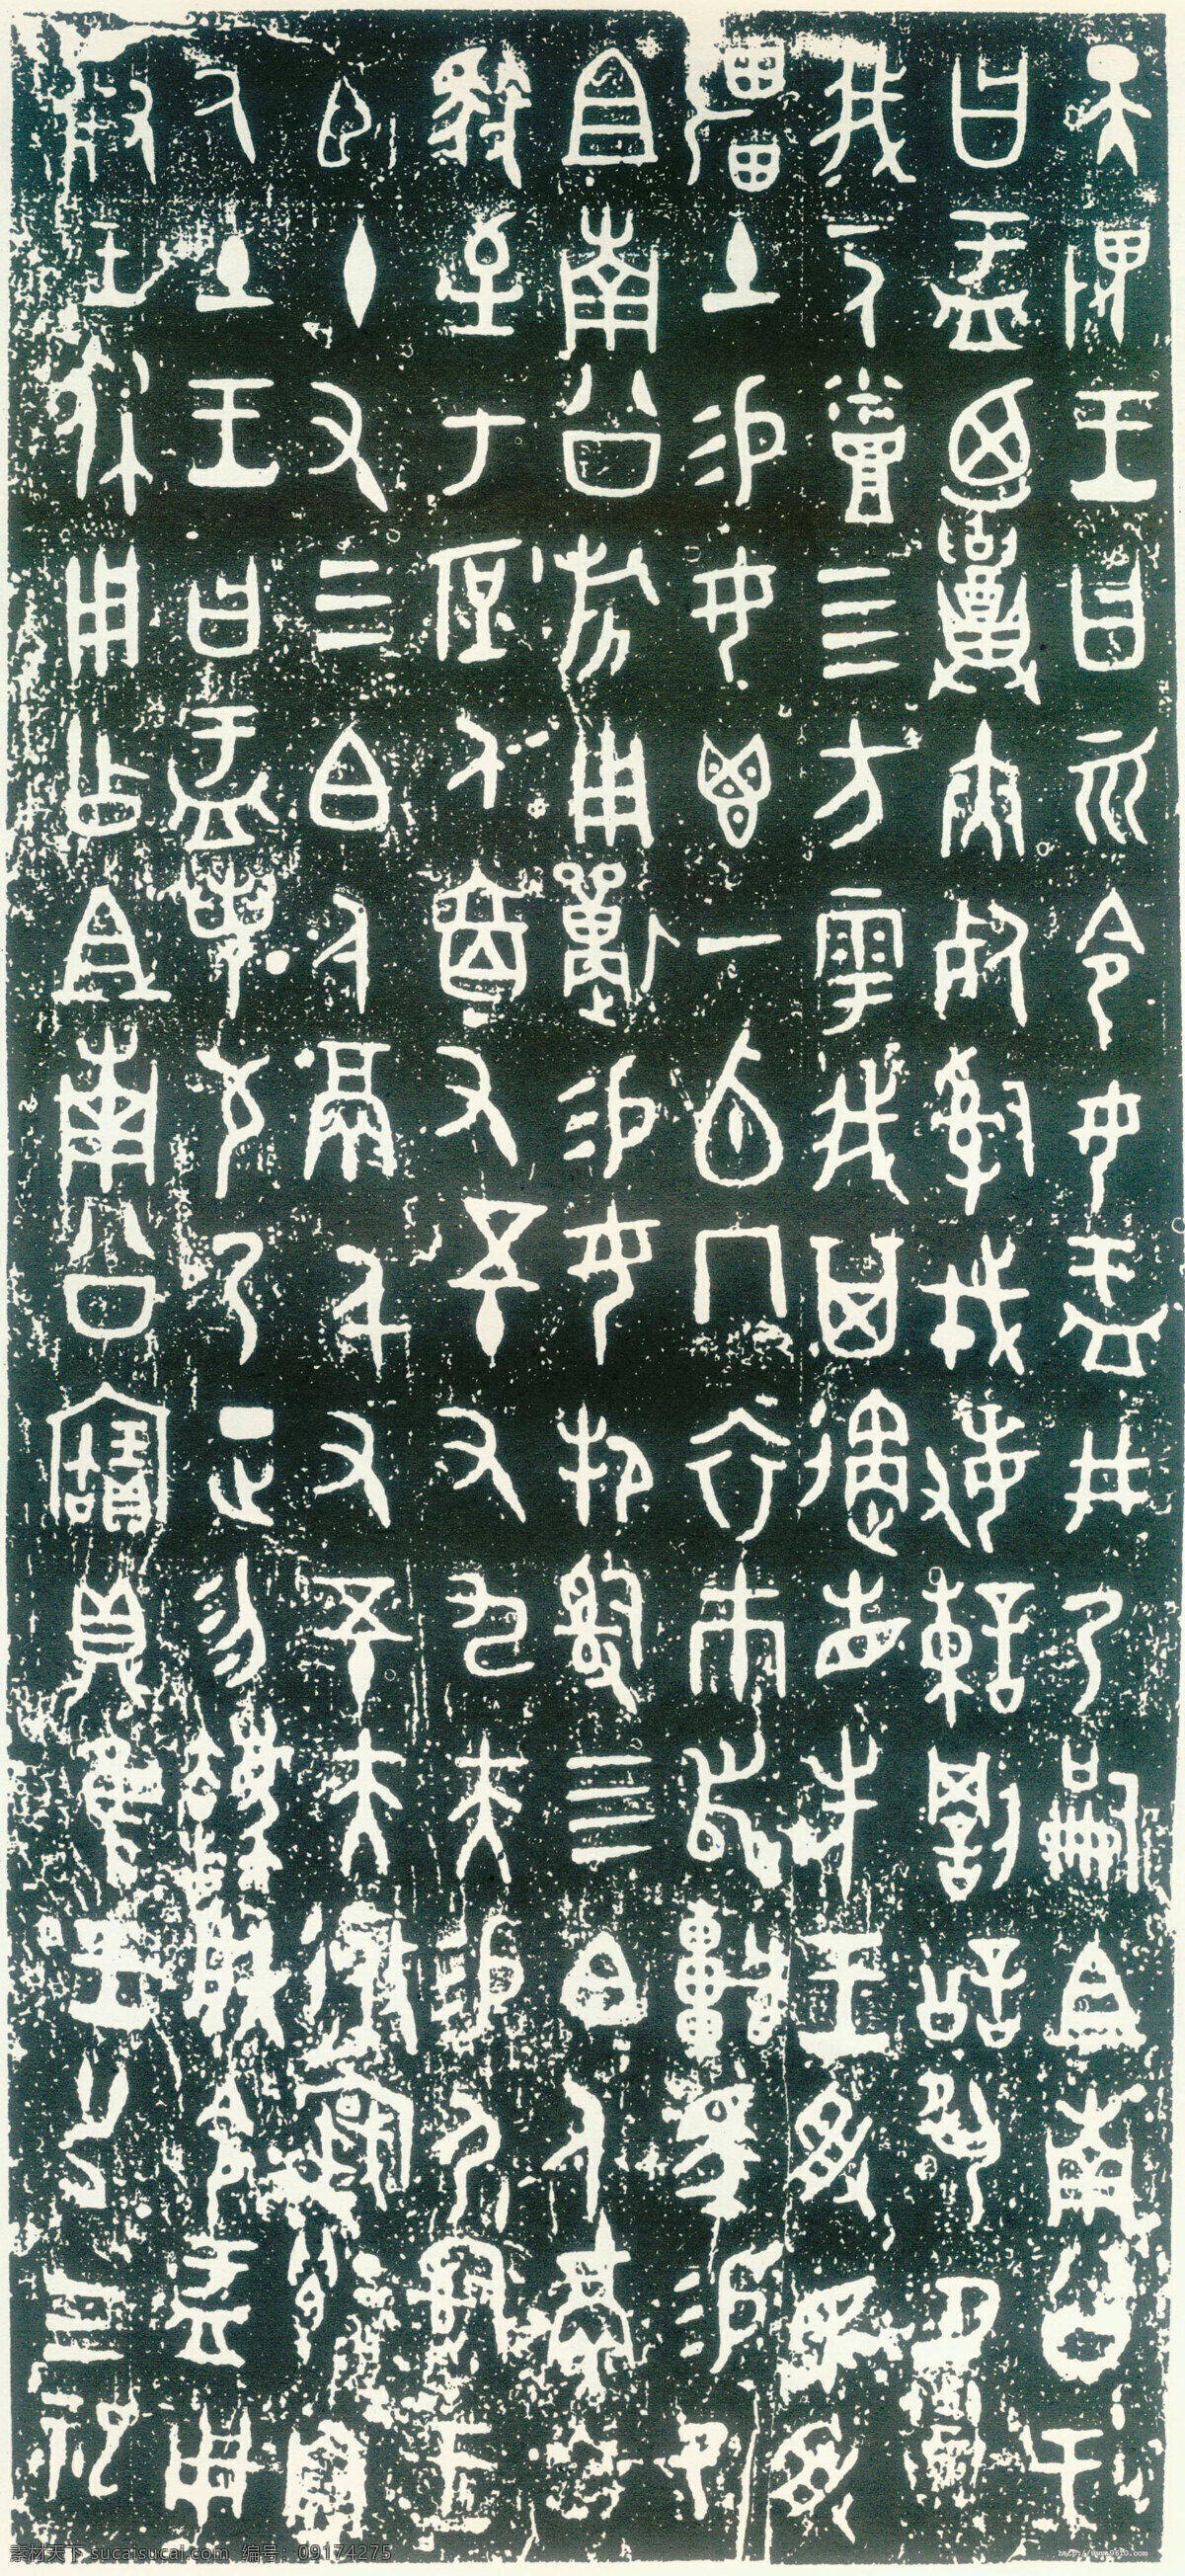 大盂鼎铭文 古汉字 书法0014 书法 设计素材 古汉字篇 书法世界 书画美术 白色